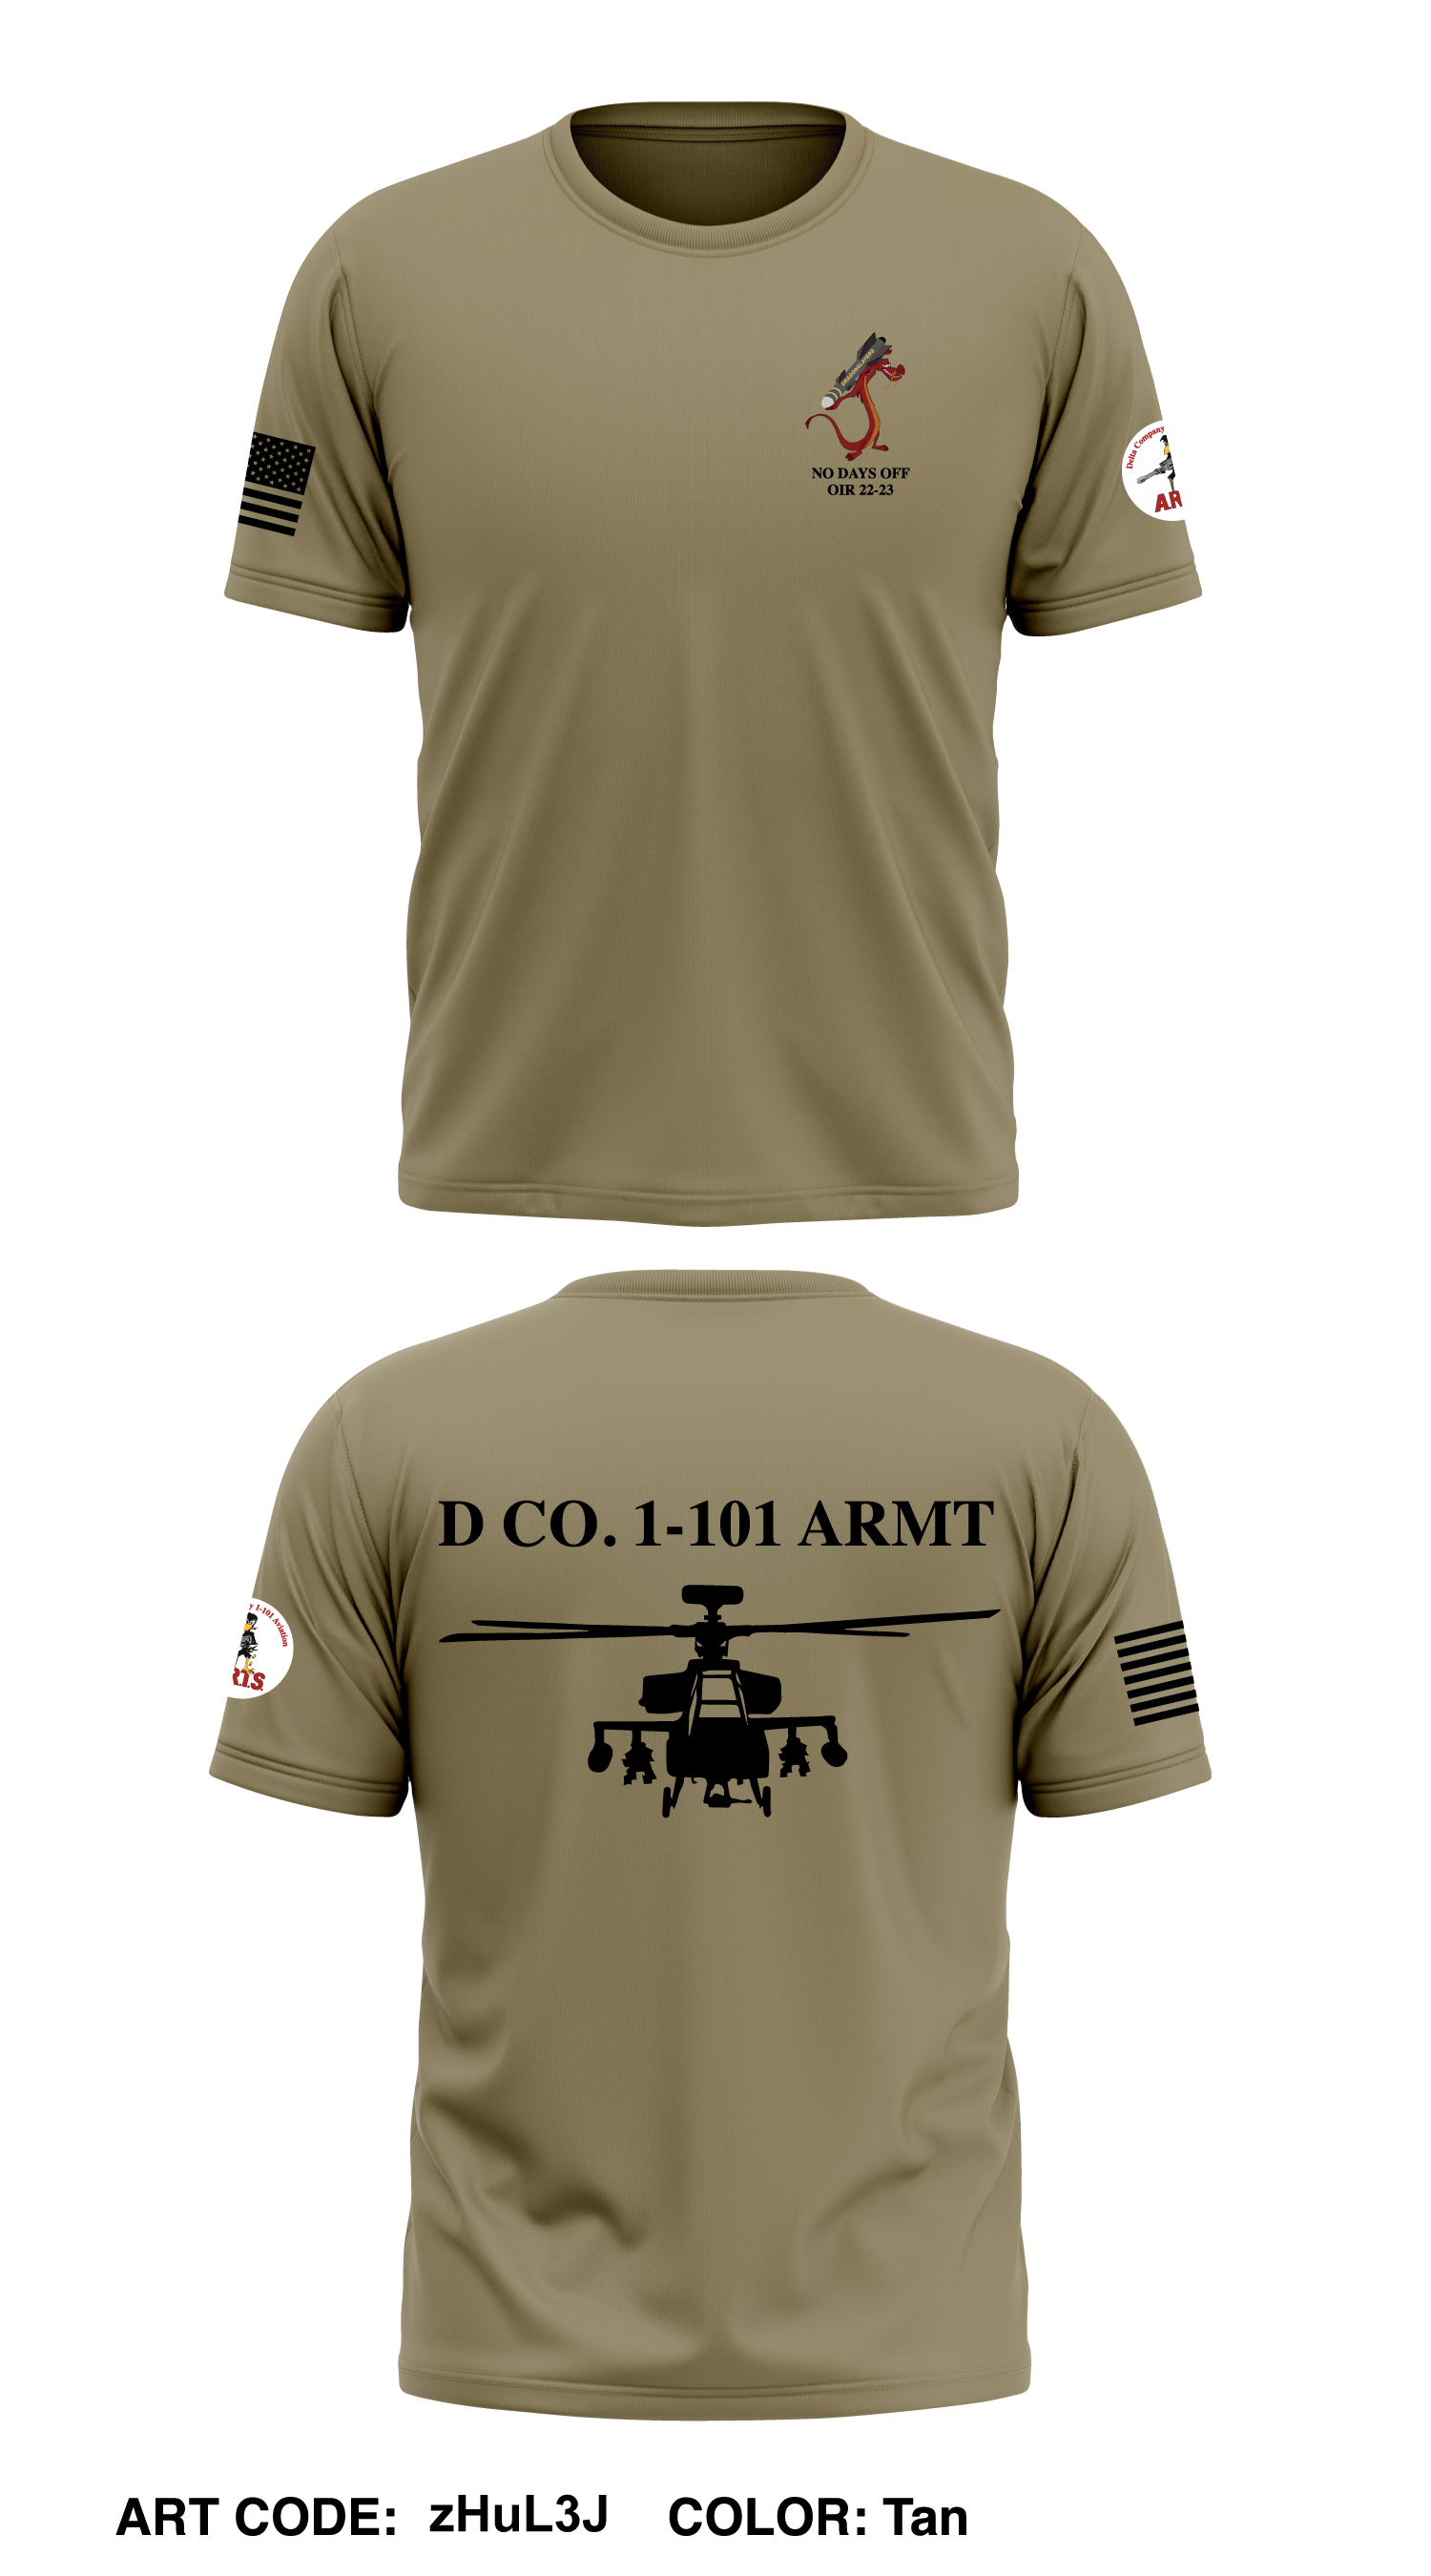 – D Men\'s Core Co., Emblem zHuL3J Athletic 1-101 ARMT - Performance Tee SS CAB,